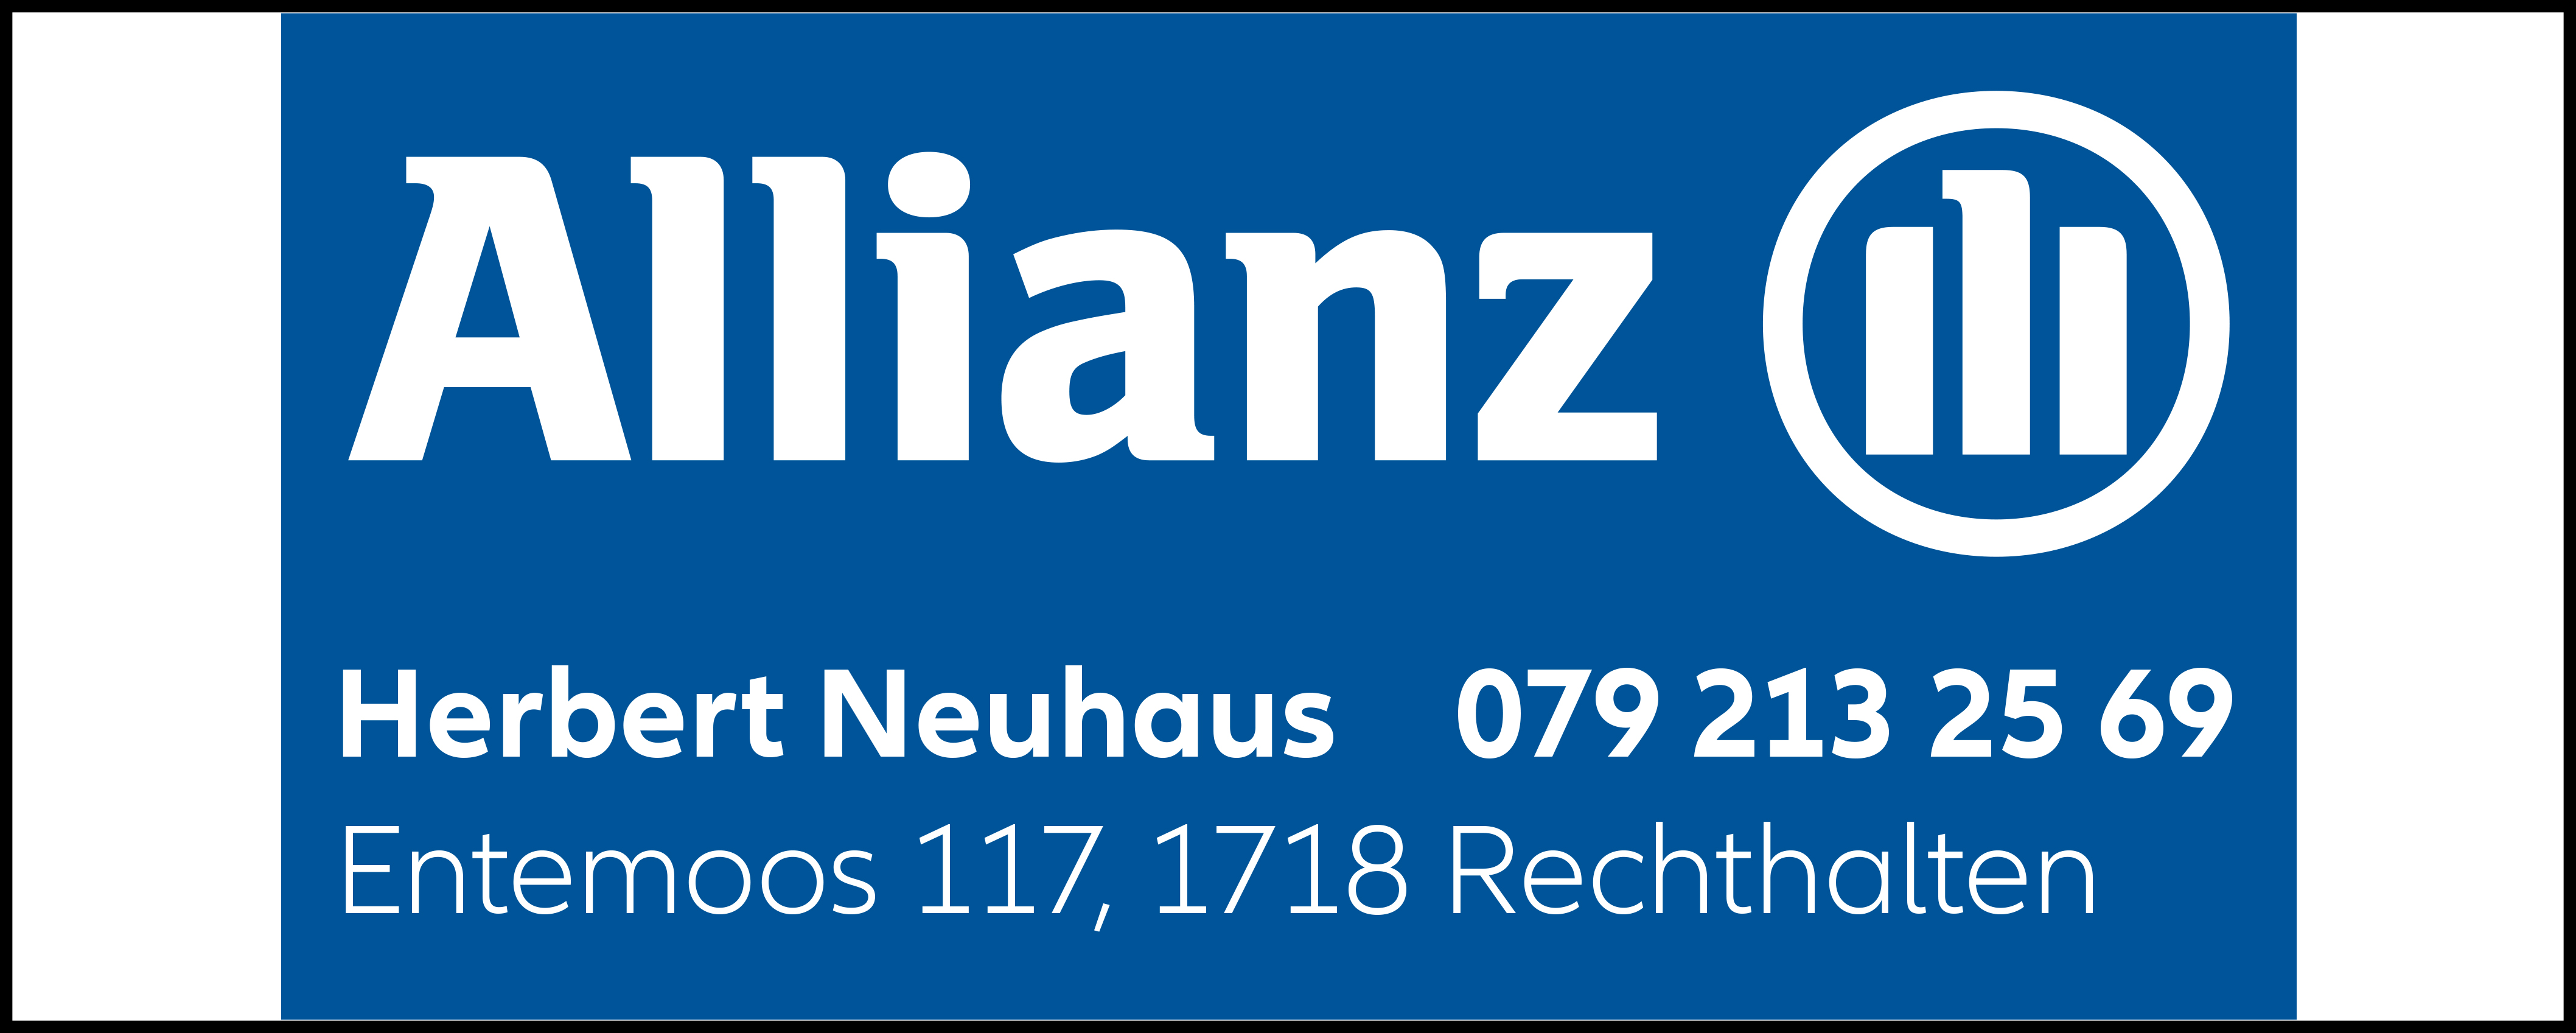 Allianz_Neuhaus